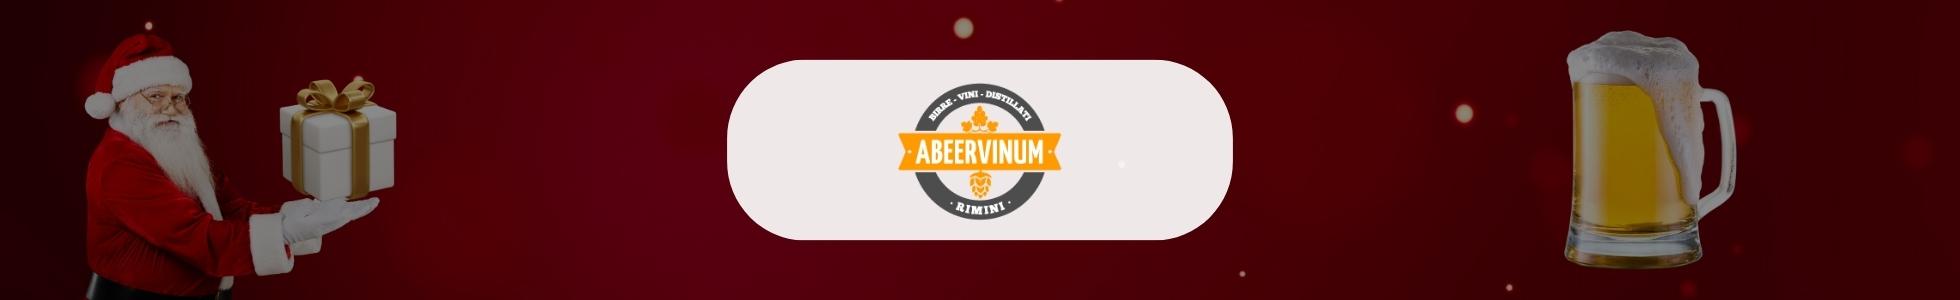 Abeervinum - Shop online birre